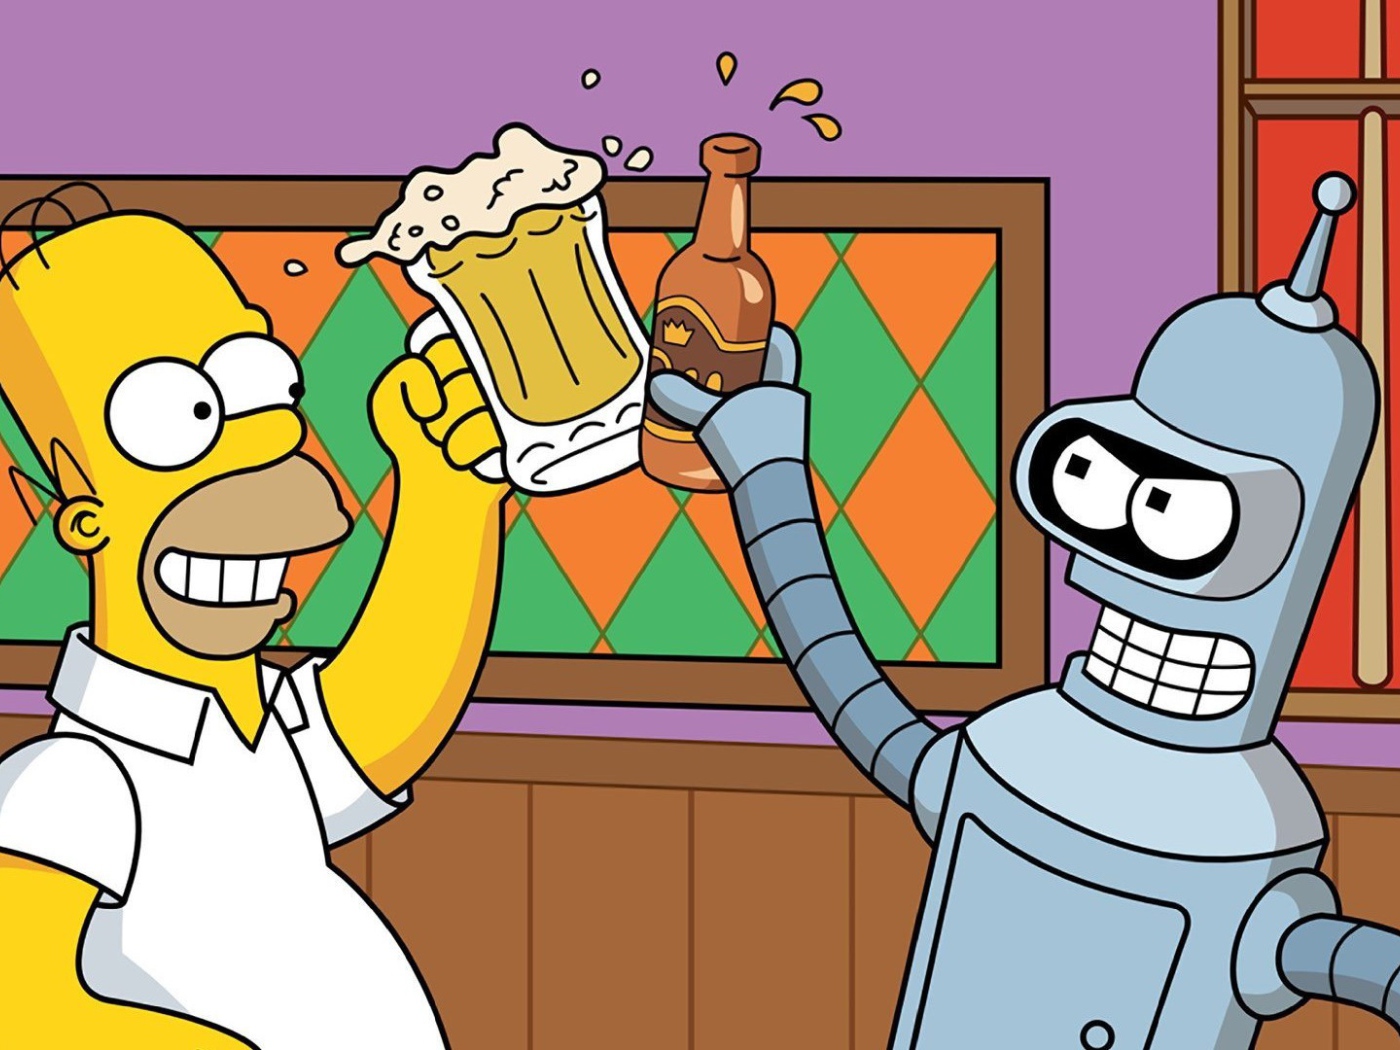 Simpson and Bender drink beer